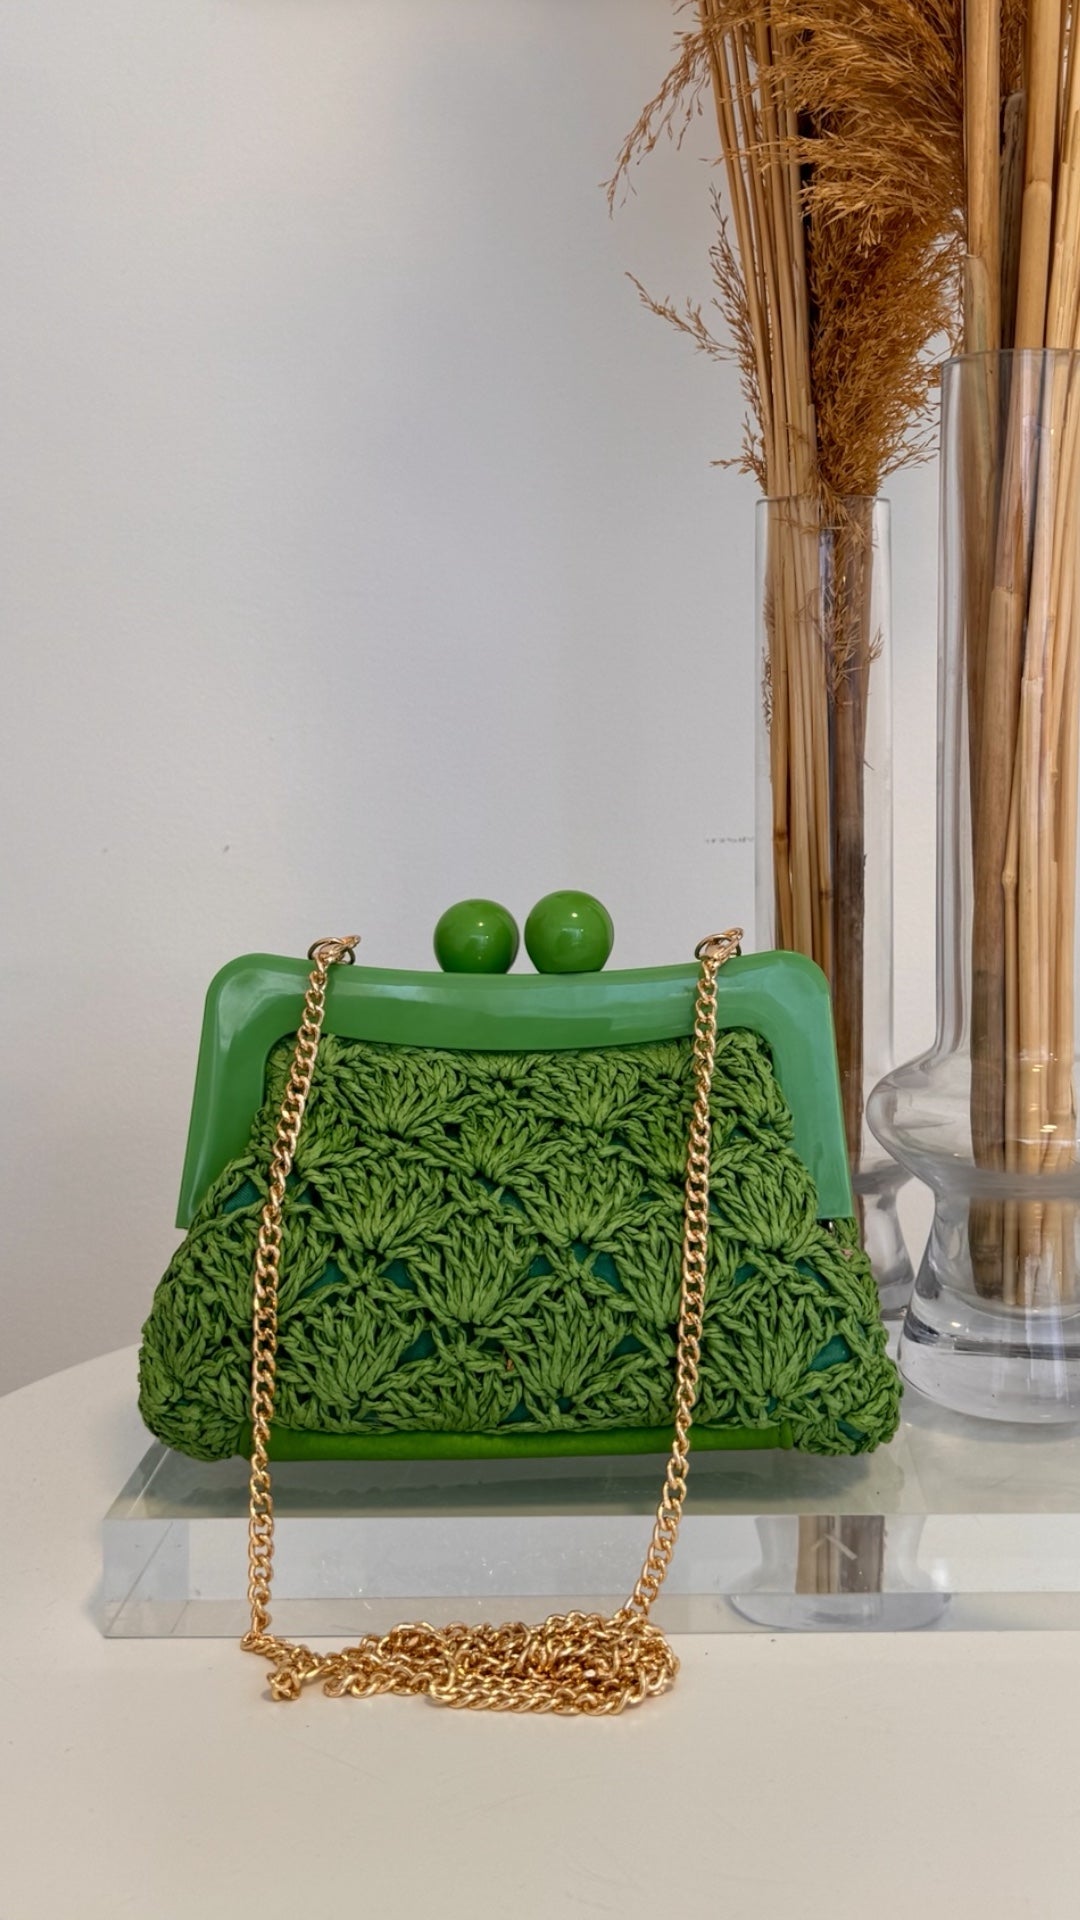 Hinata Bag in green